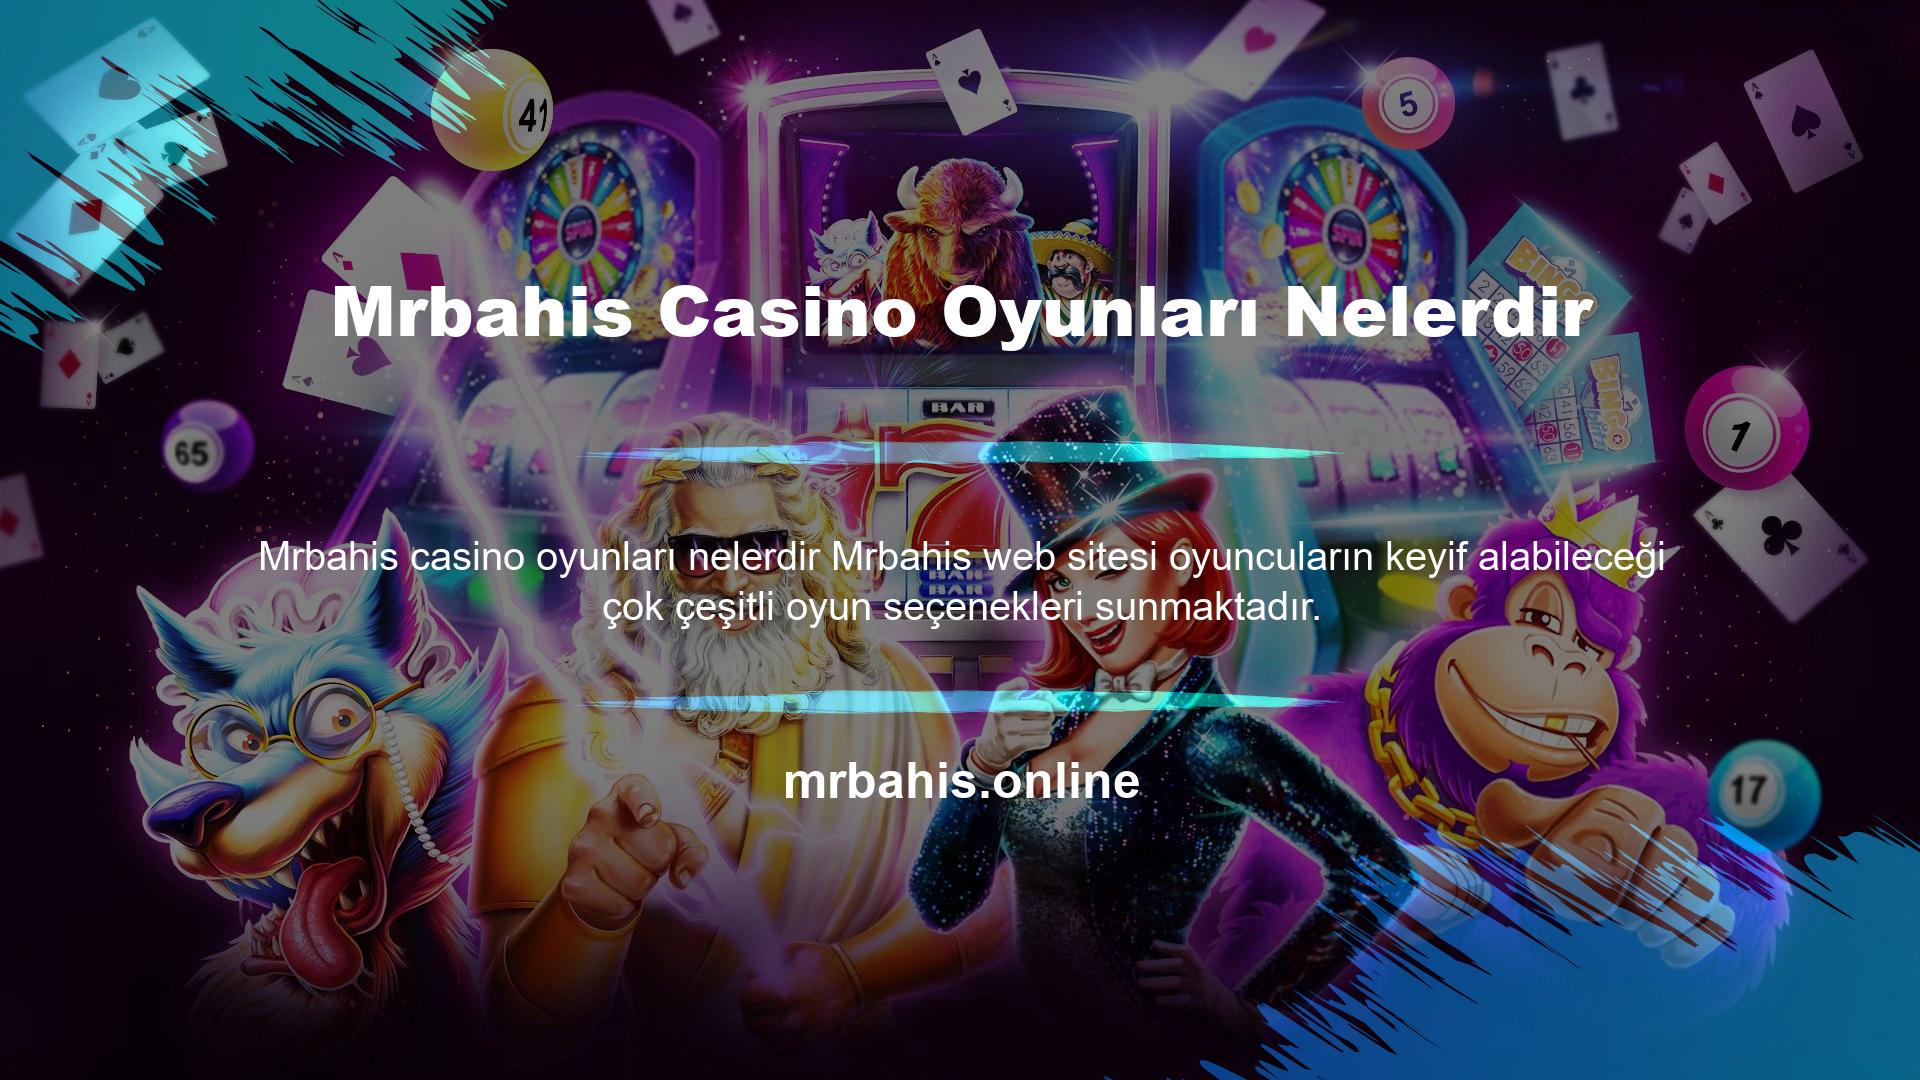 Oyuncular paralarını artırmak için casino oyunlarında şanslarını deneyebilirler